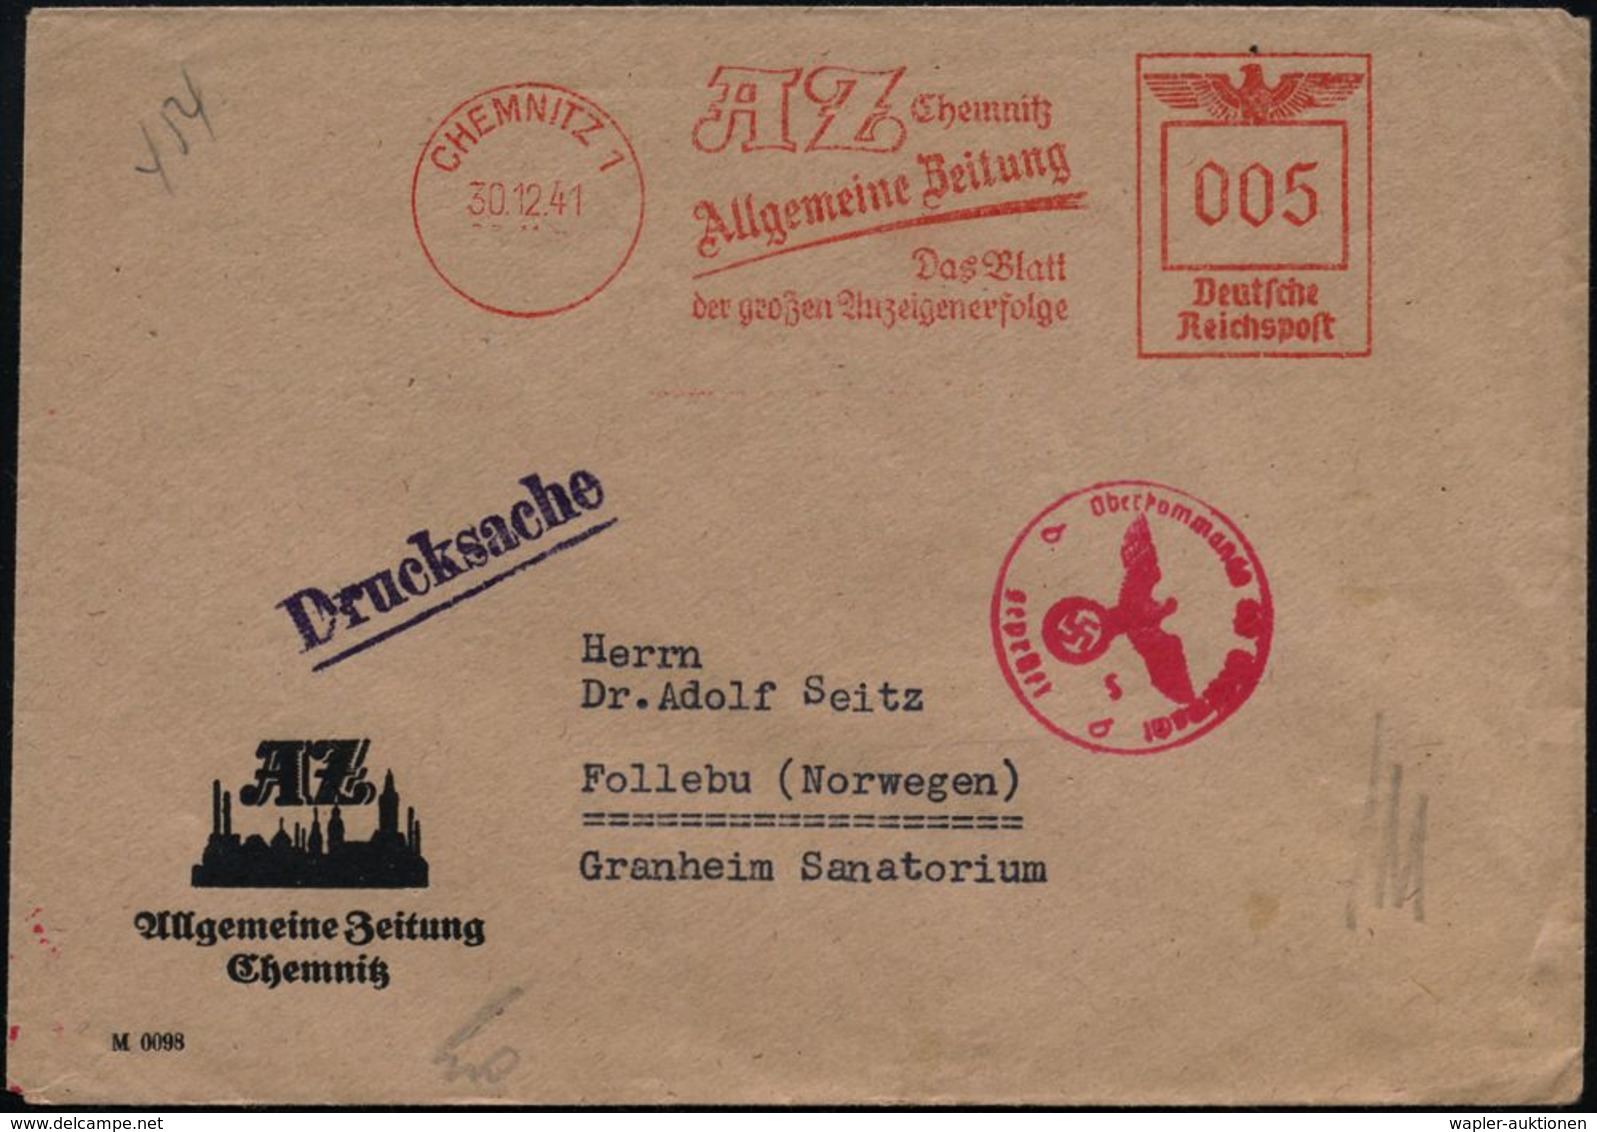 CHEMNITZ 1/ AZ../ Allgemeine Zeitung... 1941 (30.12.) AFS 005 Pf. + Roter OKW-Zenszr-1K: "b" = Berlin (Rie.B-9, 50 Pkte. - WO2